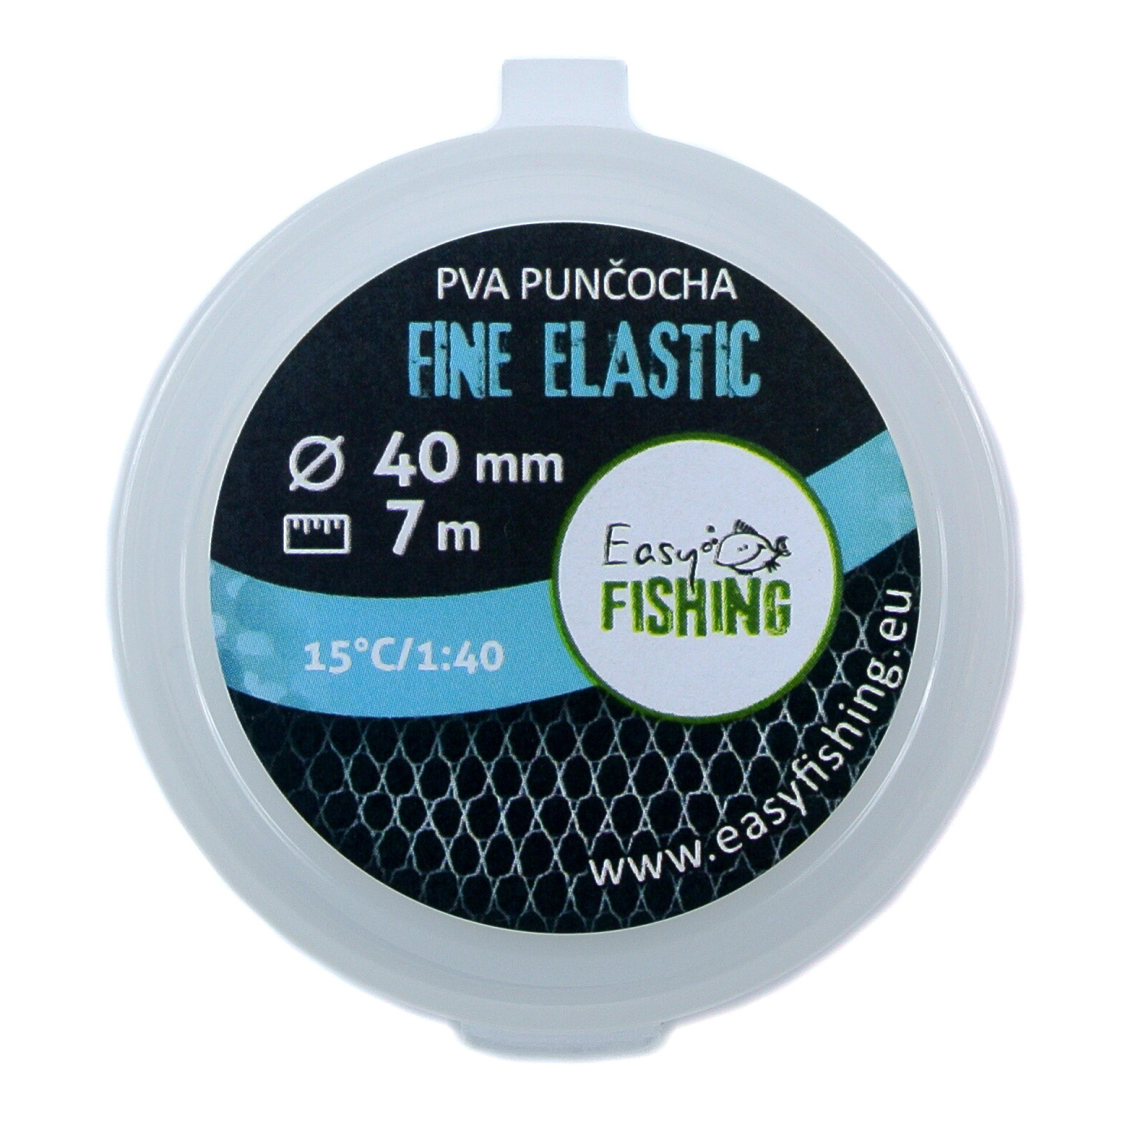 EasyFISHING 7m náhradní - PVA punčocha ELASTIC FINE 40mm